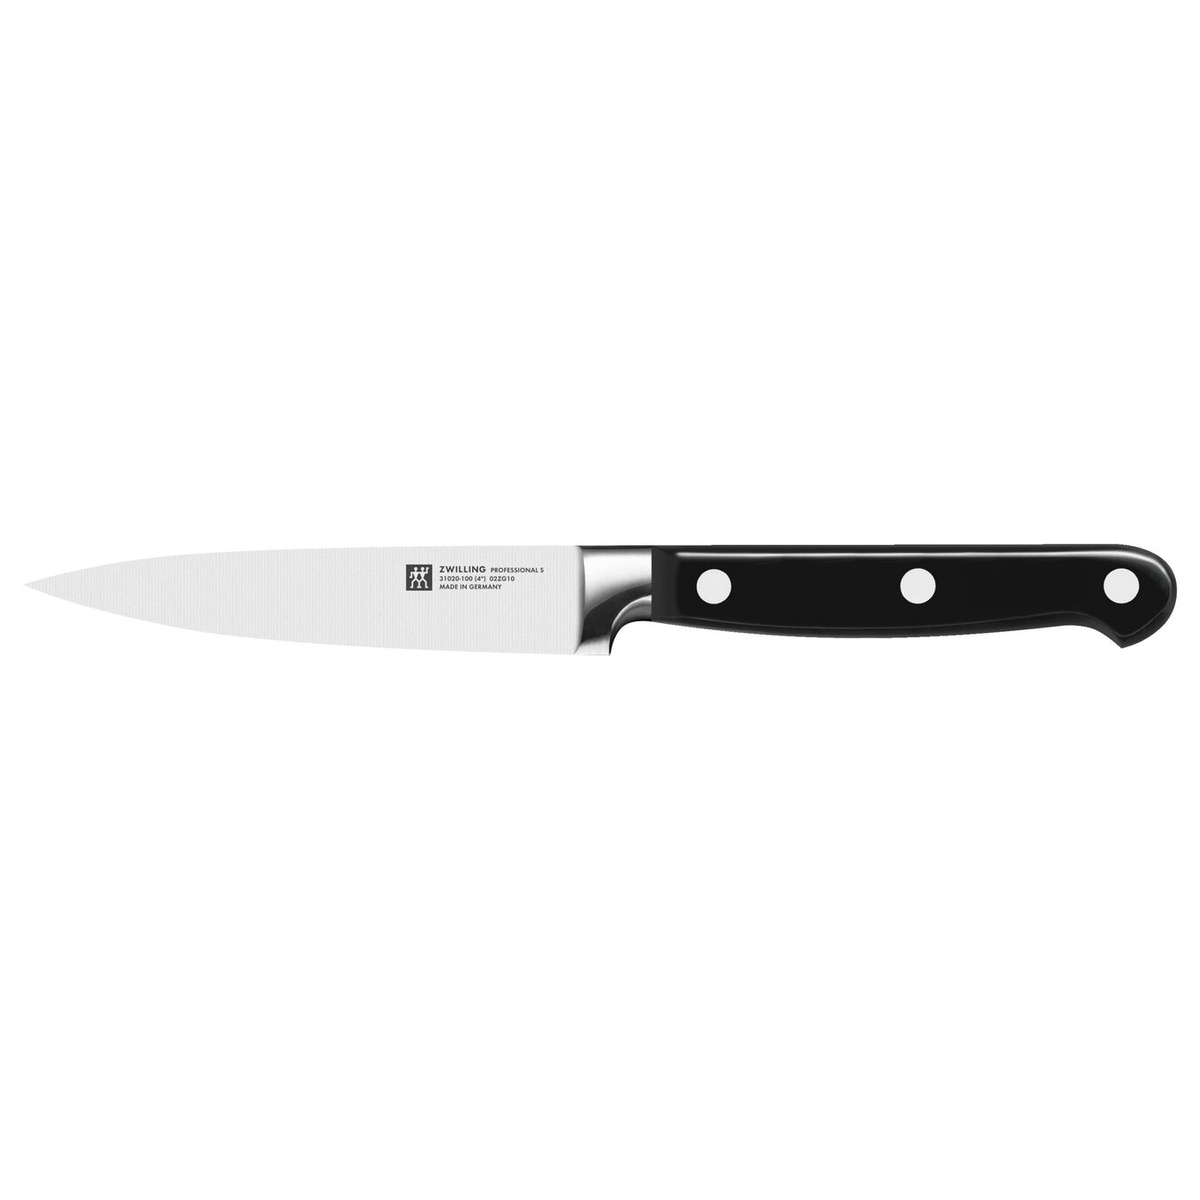 Нож для очистки овощей 10 см Zwilling Professional S фото